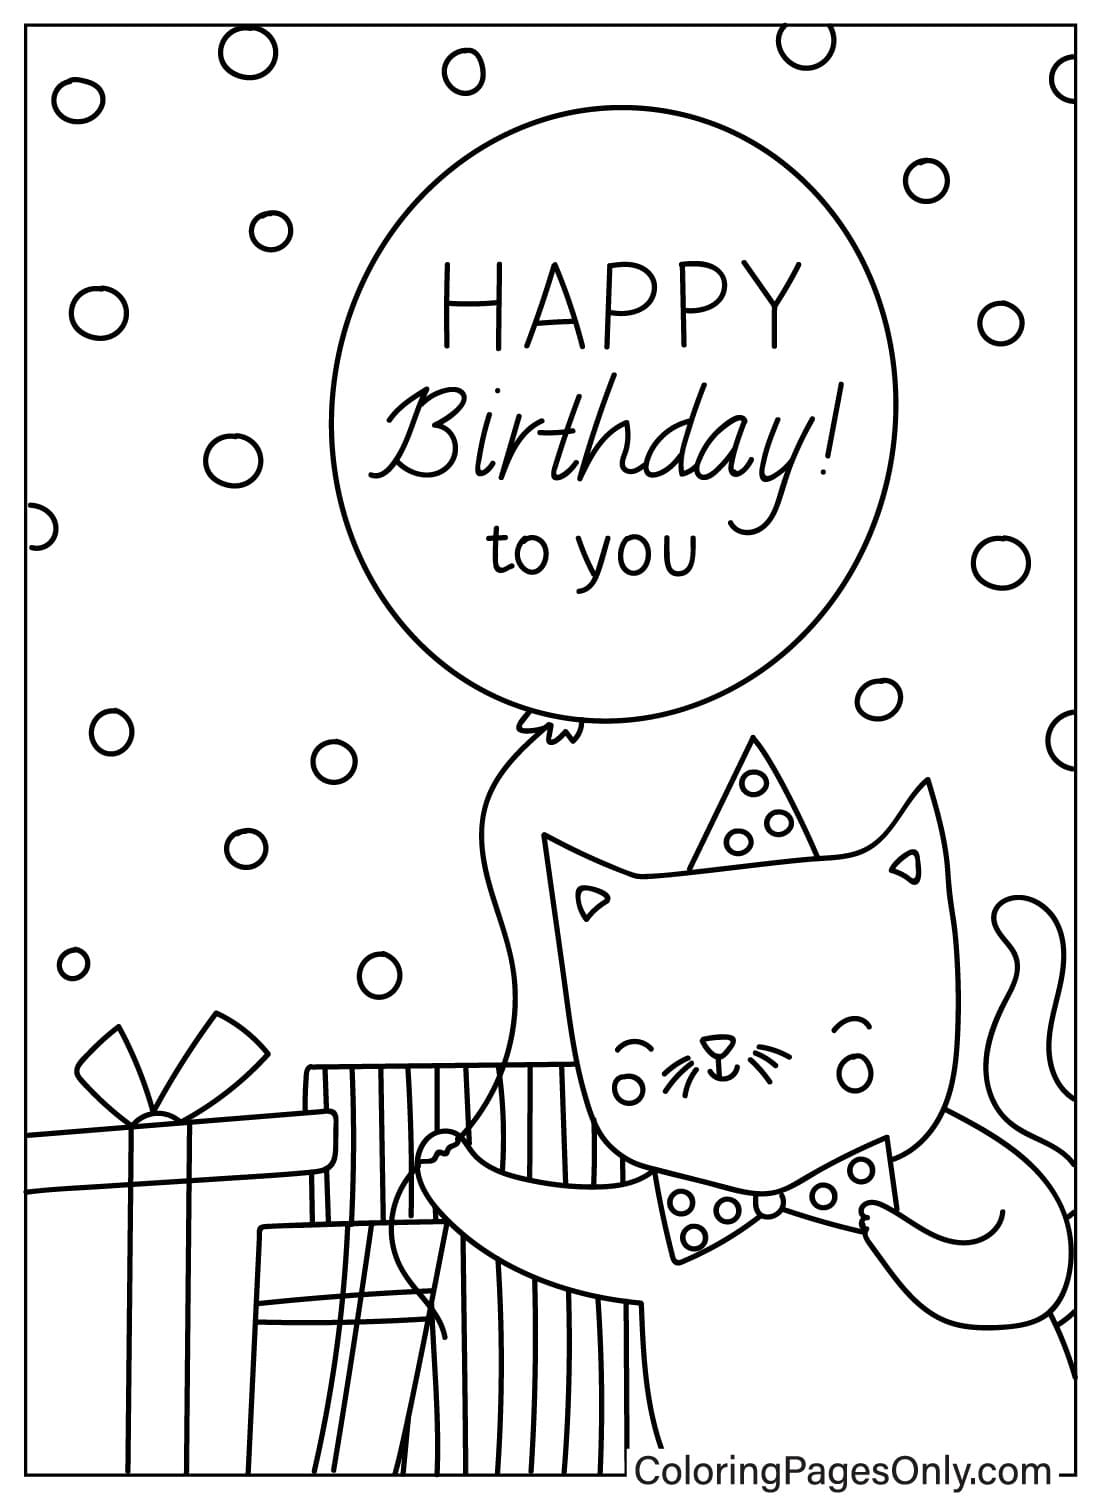 Раскрасить открытку с днем ​​рождения из открытки с днем ​​рождения